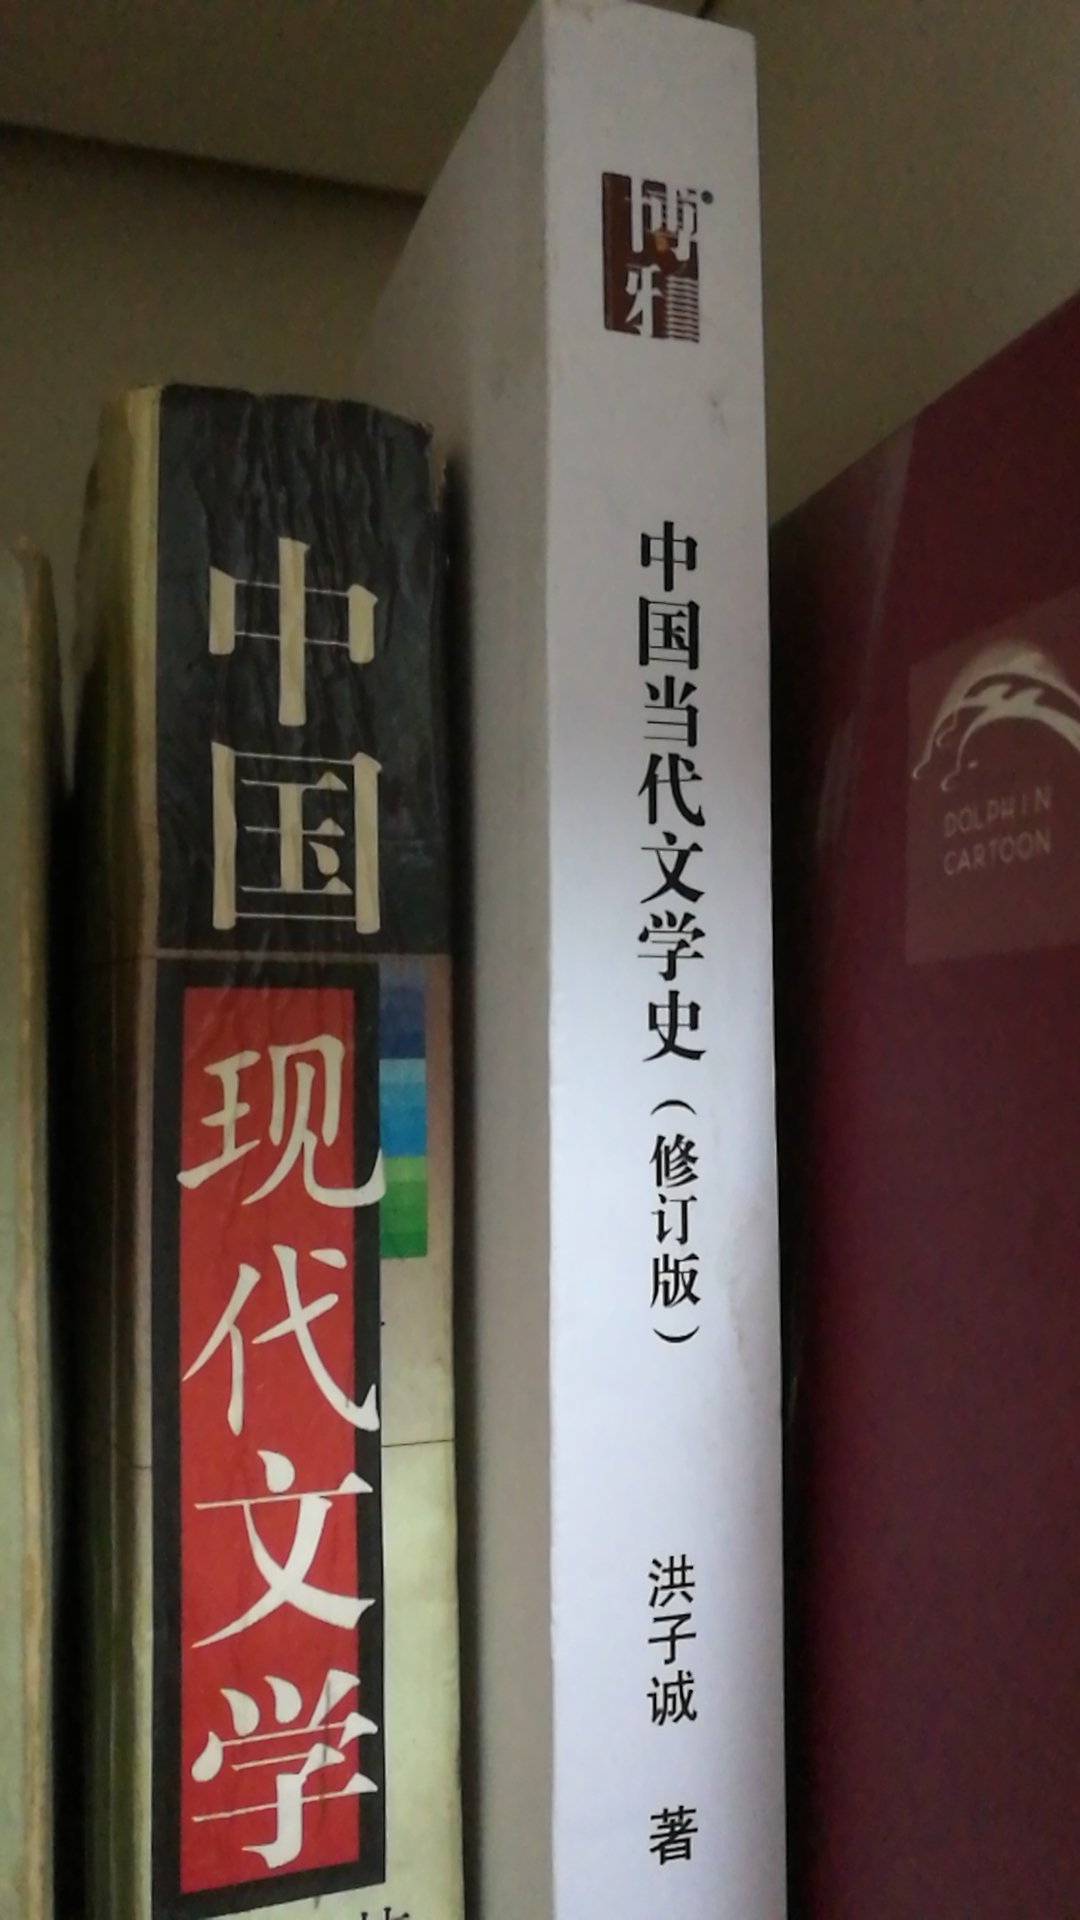 看了几本文学史的书，有古代的，现代的，这本是写当代文学的，客观来说，写的还是比较全面的。用来参考借鉴，多看几个版本，可以互相佐证补全，从不同角度刻画出一个较为清晰的中国当代文学脉络。